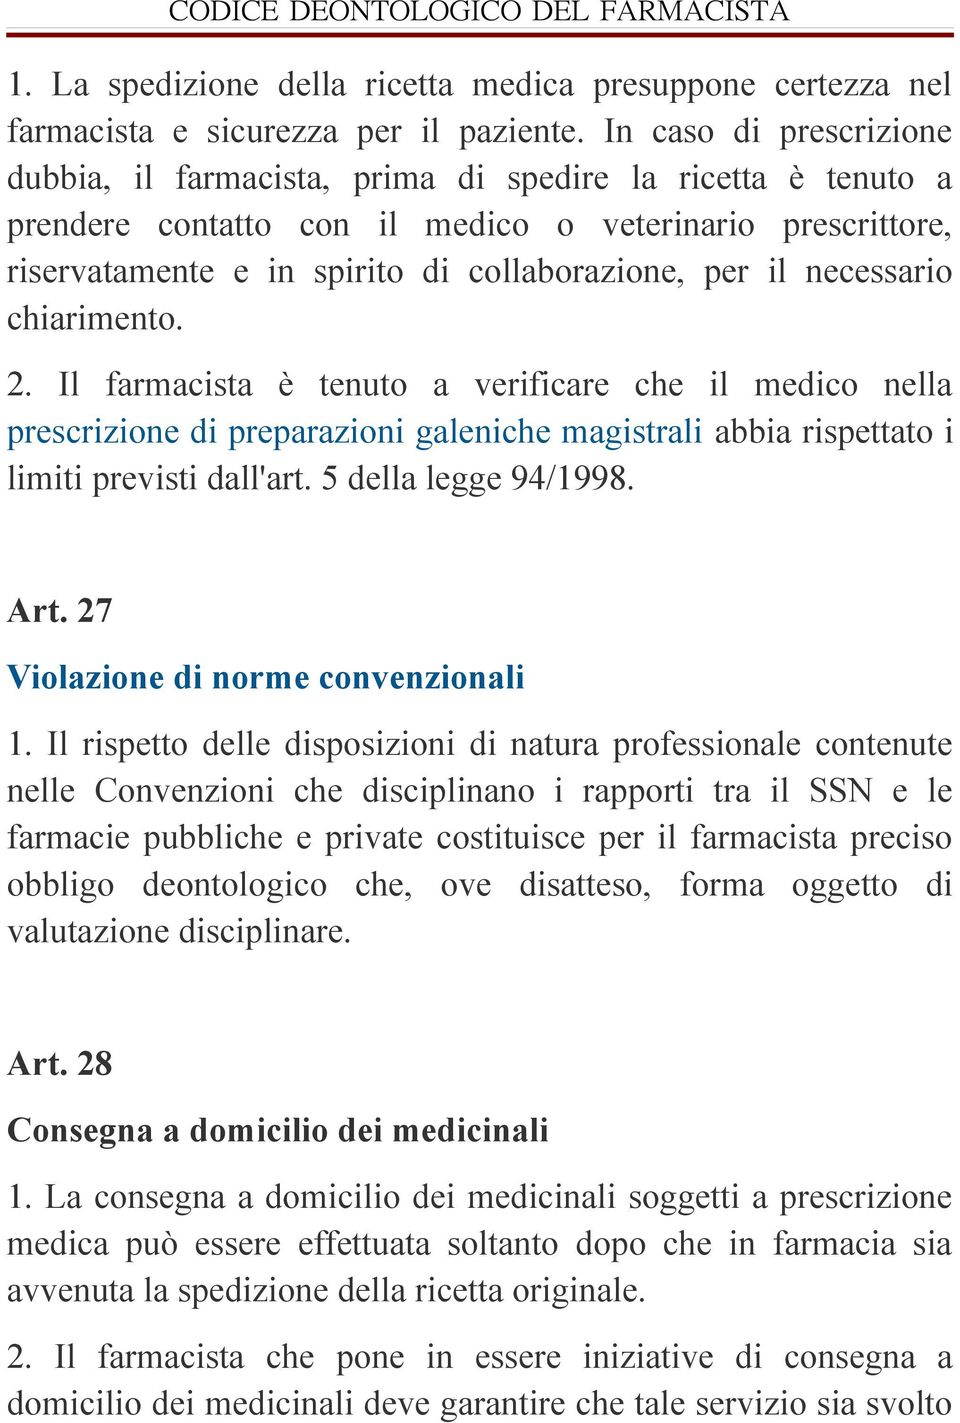 necessario chiarimento. 2. Il farmacista è tenuto a verificare che il medico nella prescrizione di preparazioni galeniche magistrali abbia rispettato i limiti previsti dall'art. 5 della legge 94/1998.